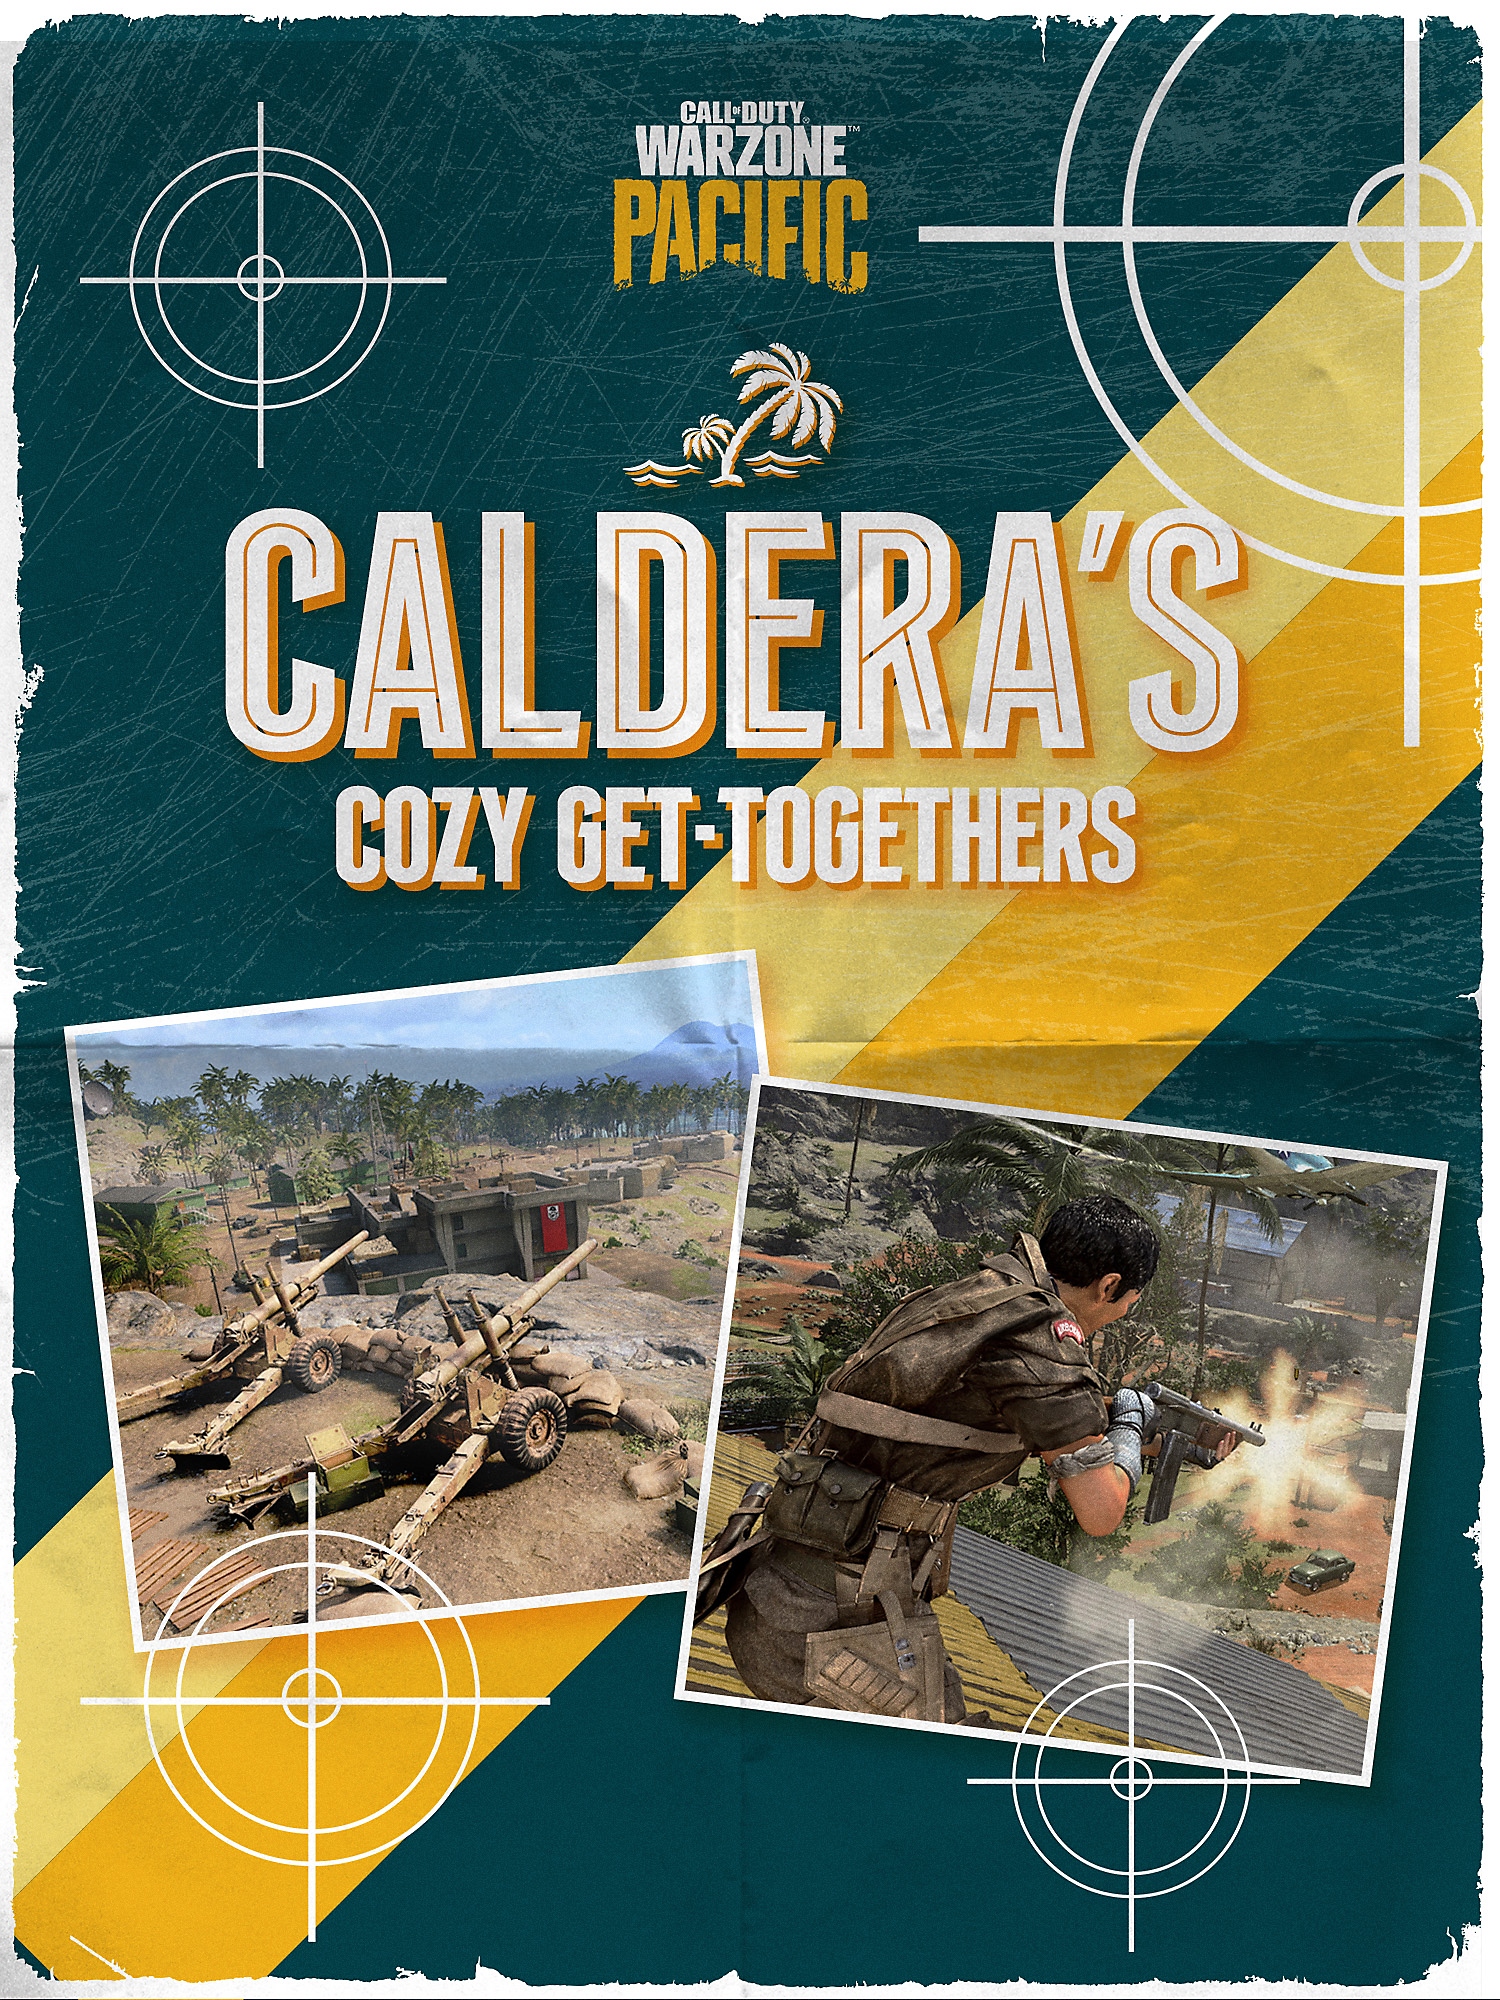 Caldera Cosy Get-Togethers brochure cover